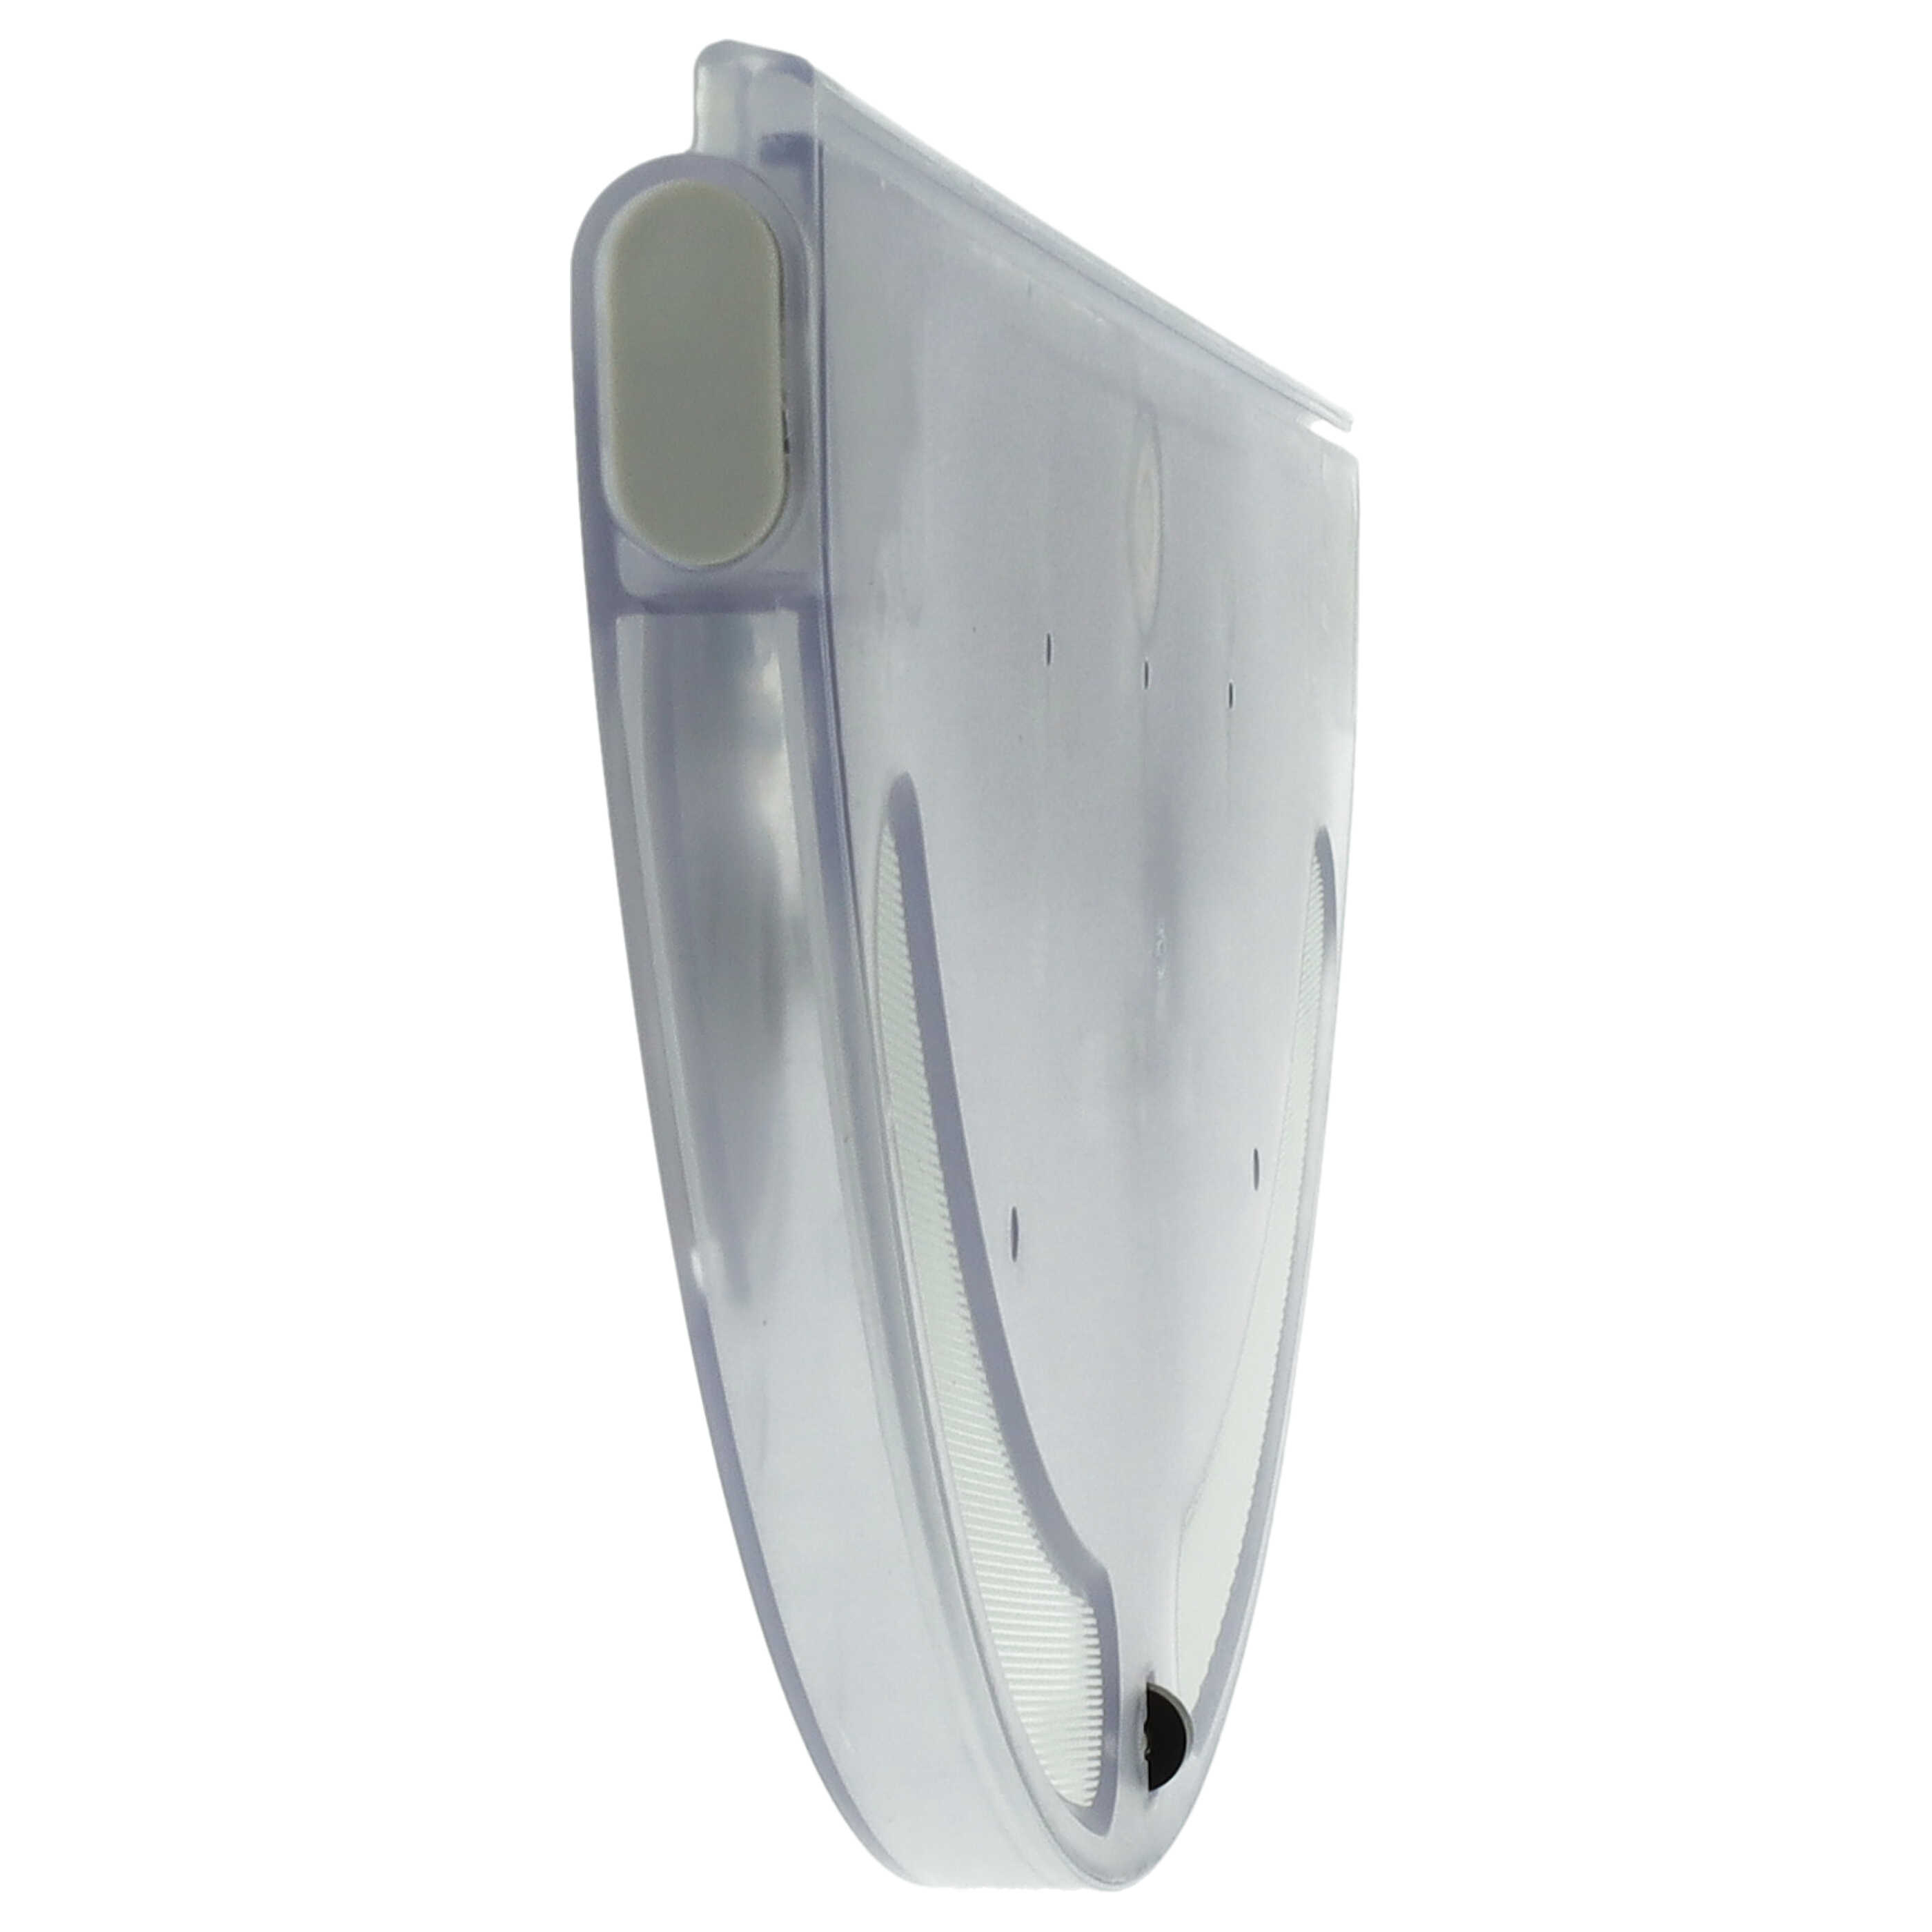 Supporto per aspirapolvere Xiaomi Mijia 1C - 32,5 x 13,4 x 1,6 cm, 190 g, trasparente